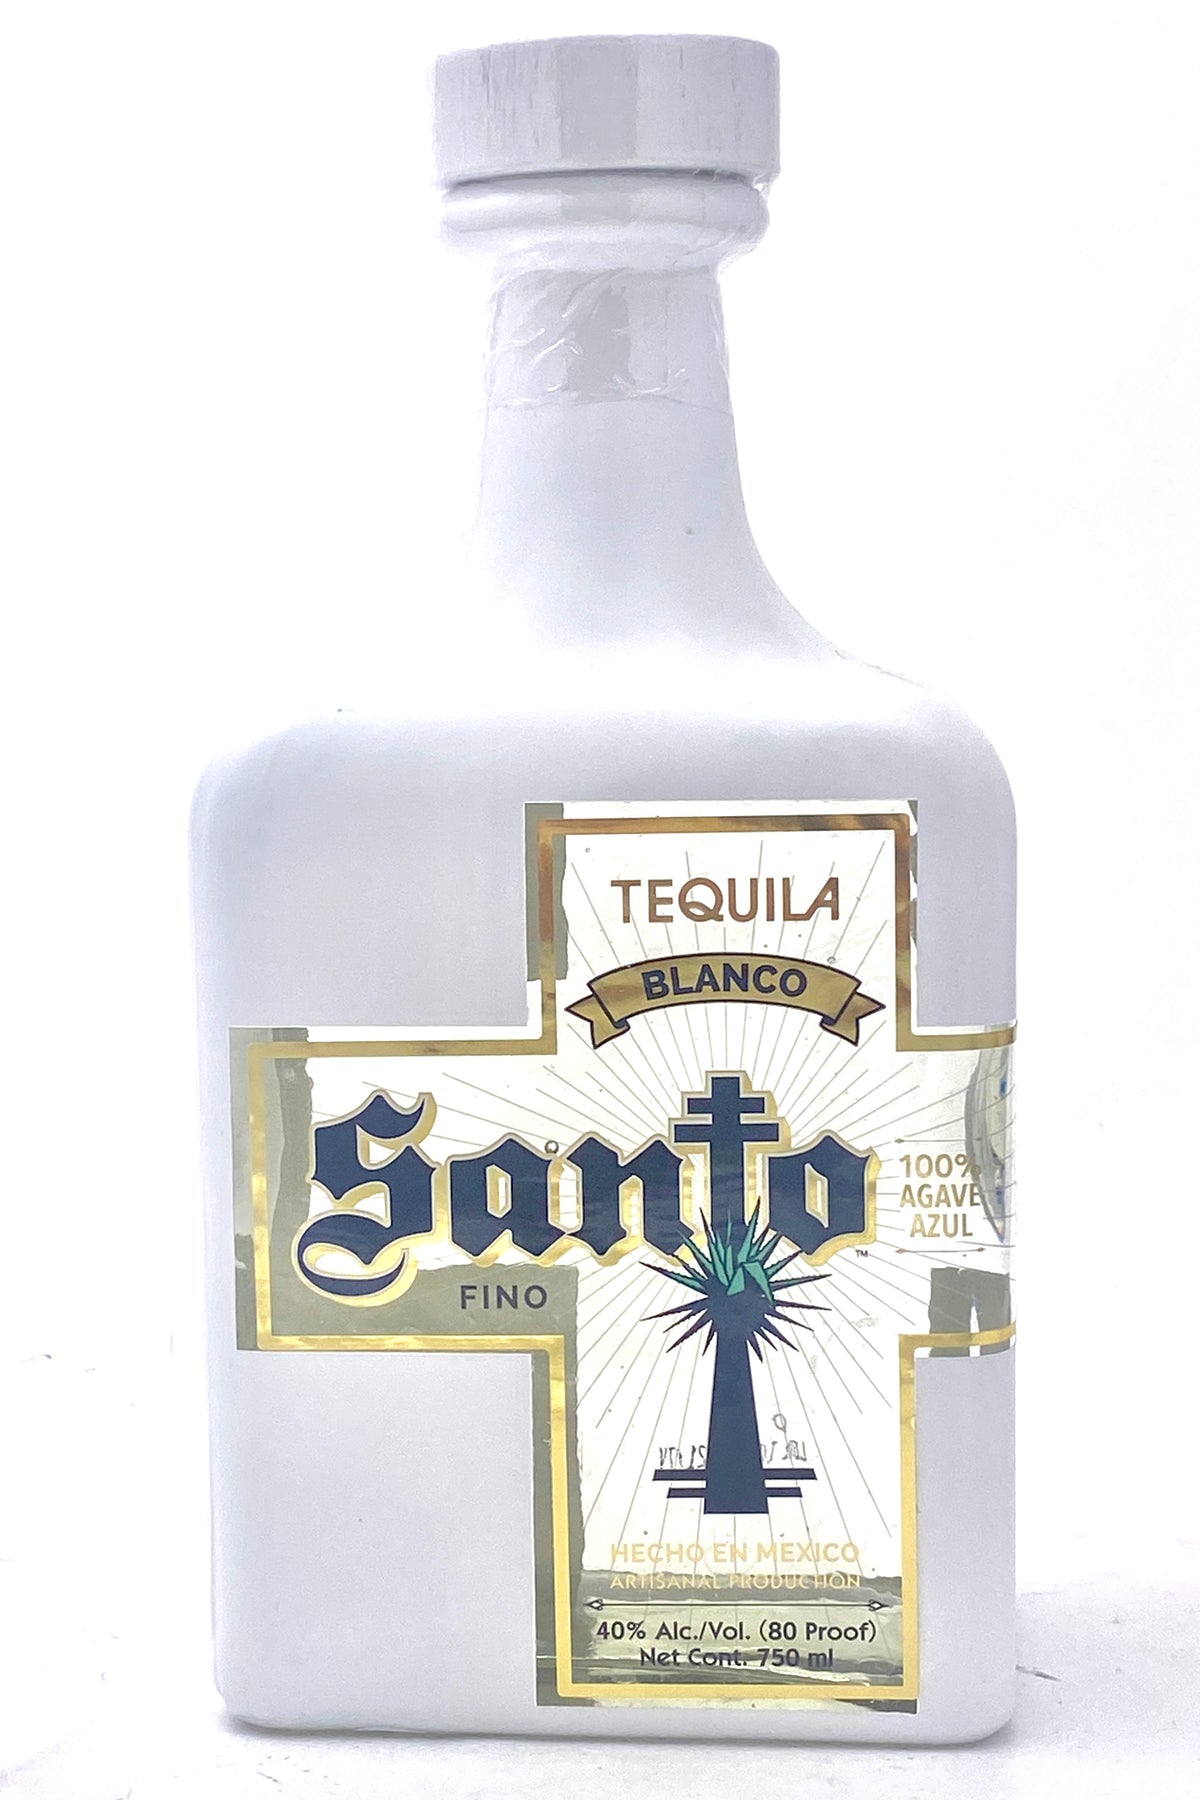 Santo Tequila Blanco Fino